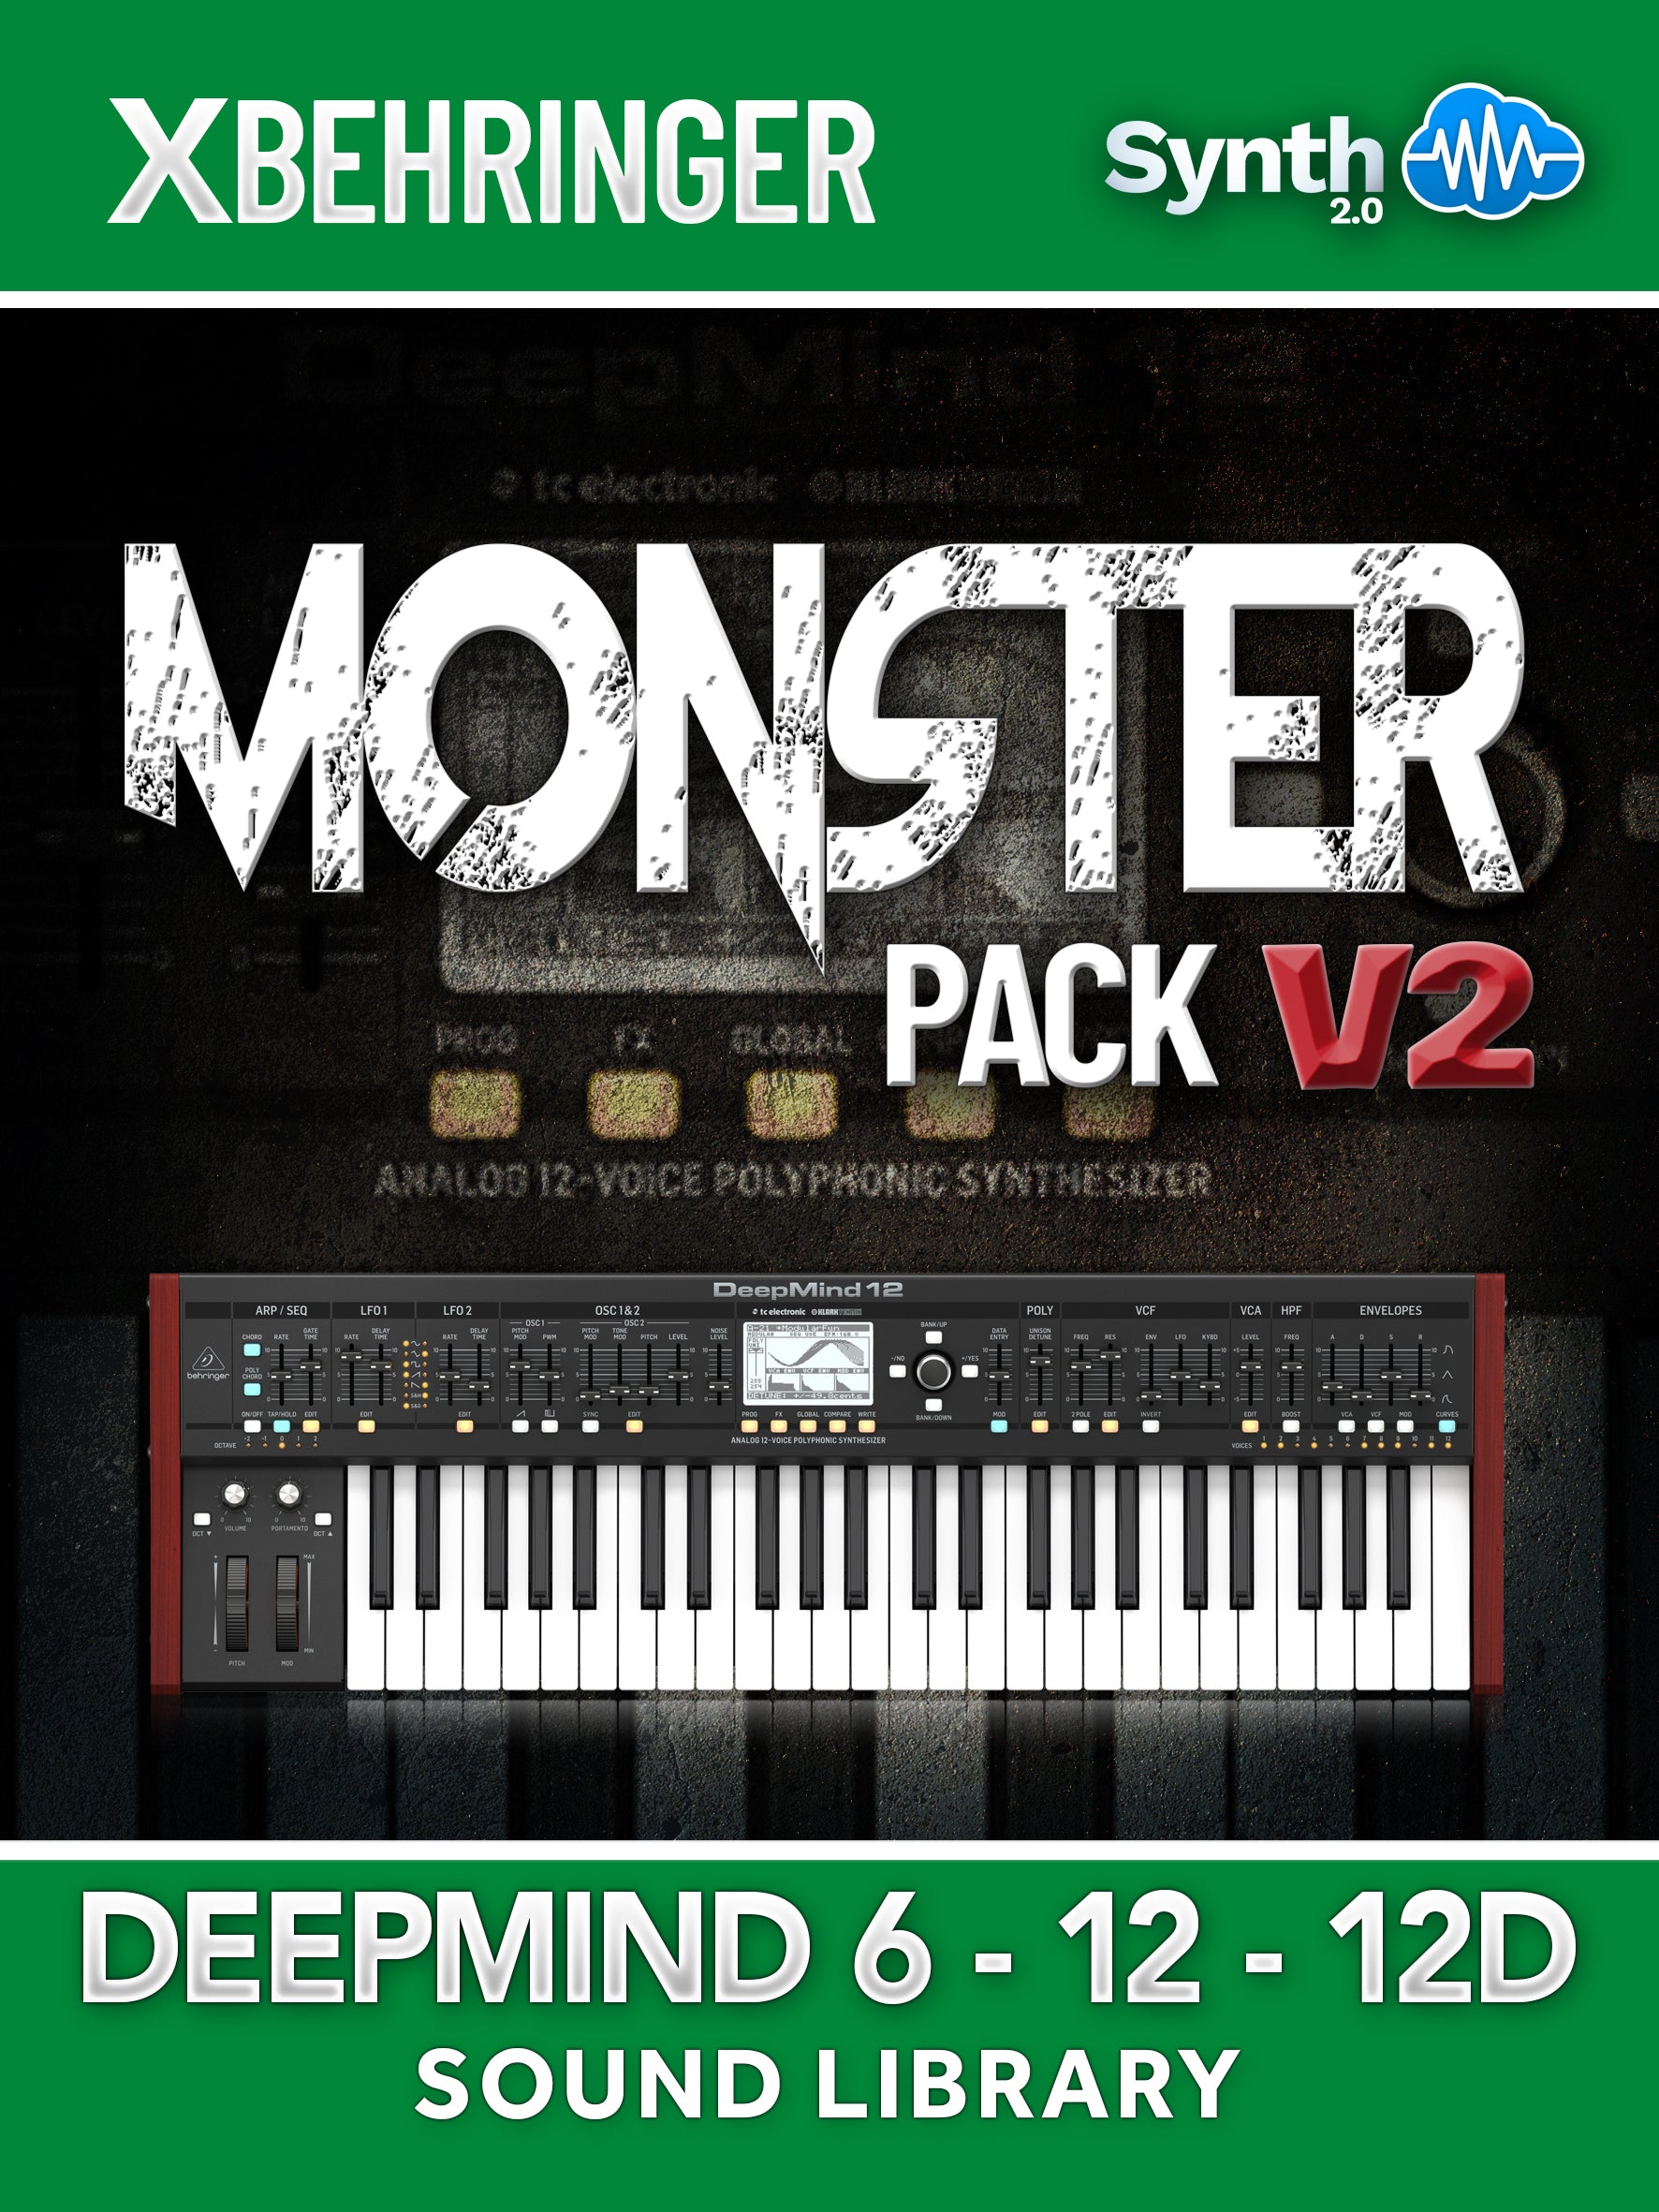 SCL049 - Monster Pack V2 - Behringer Deepmind 6 / 12 / 12D